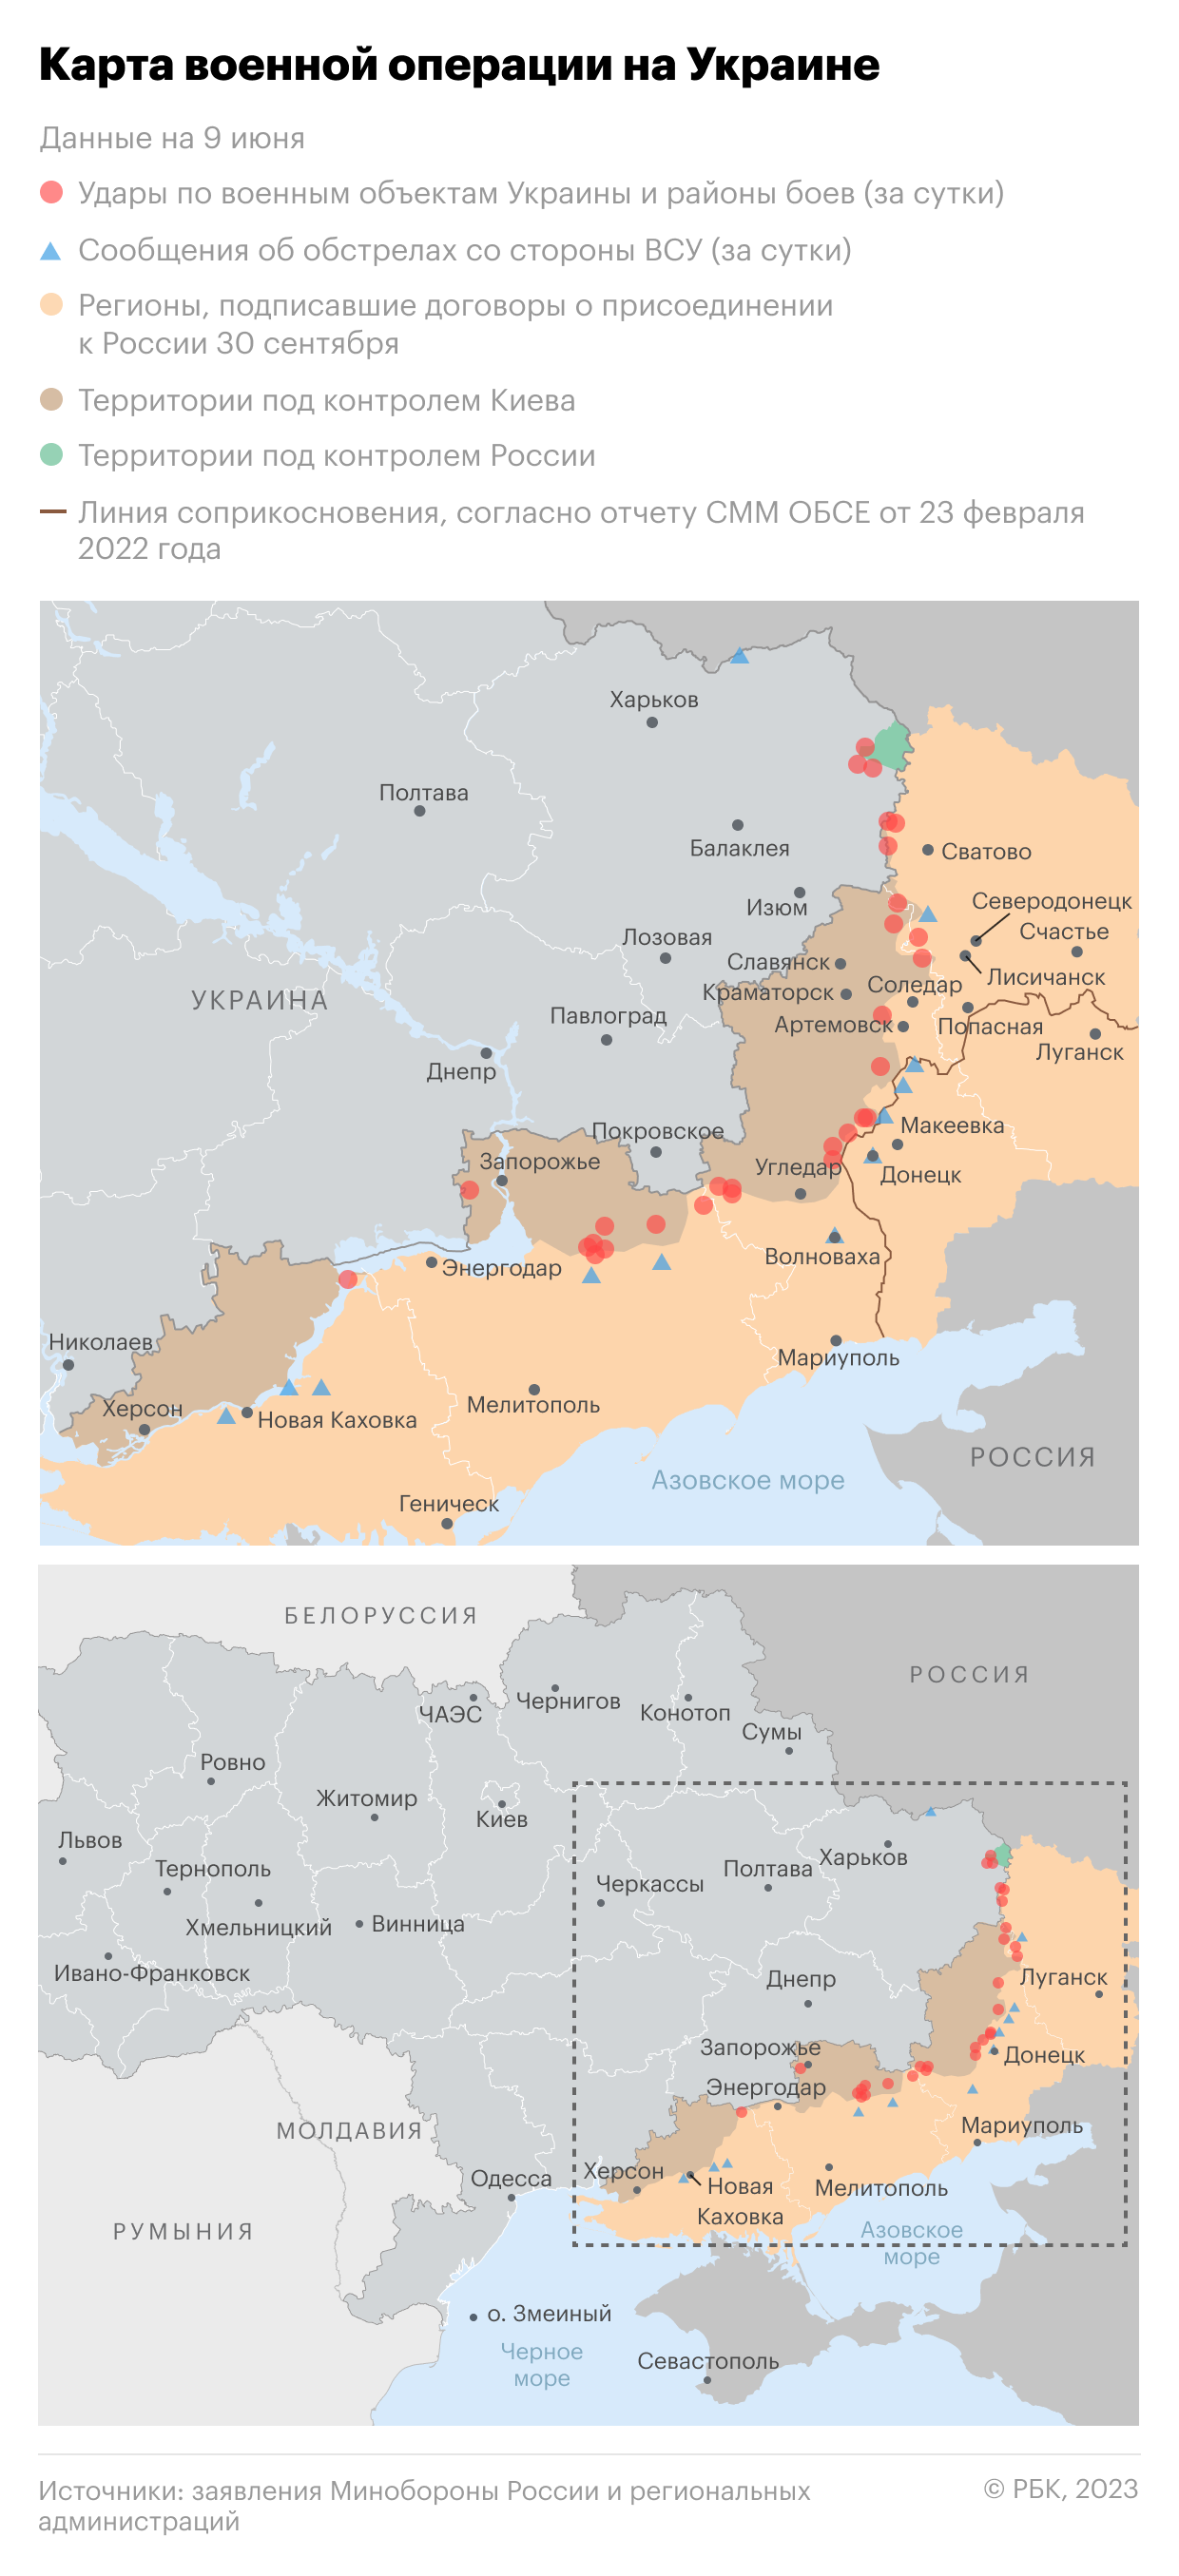 Военная операция на Украине. Карта на 9 июня"/>













